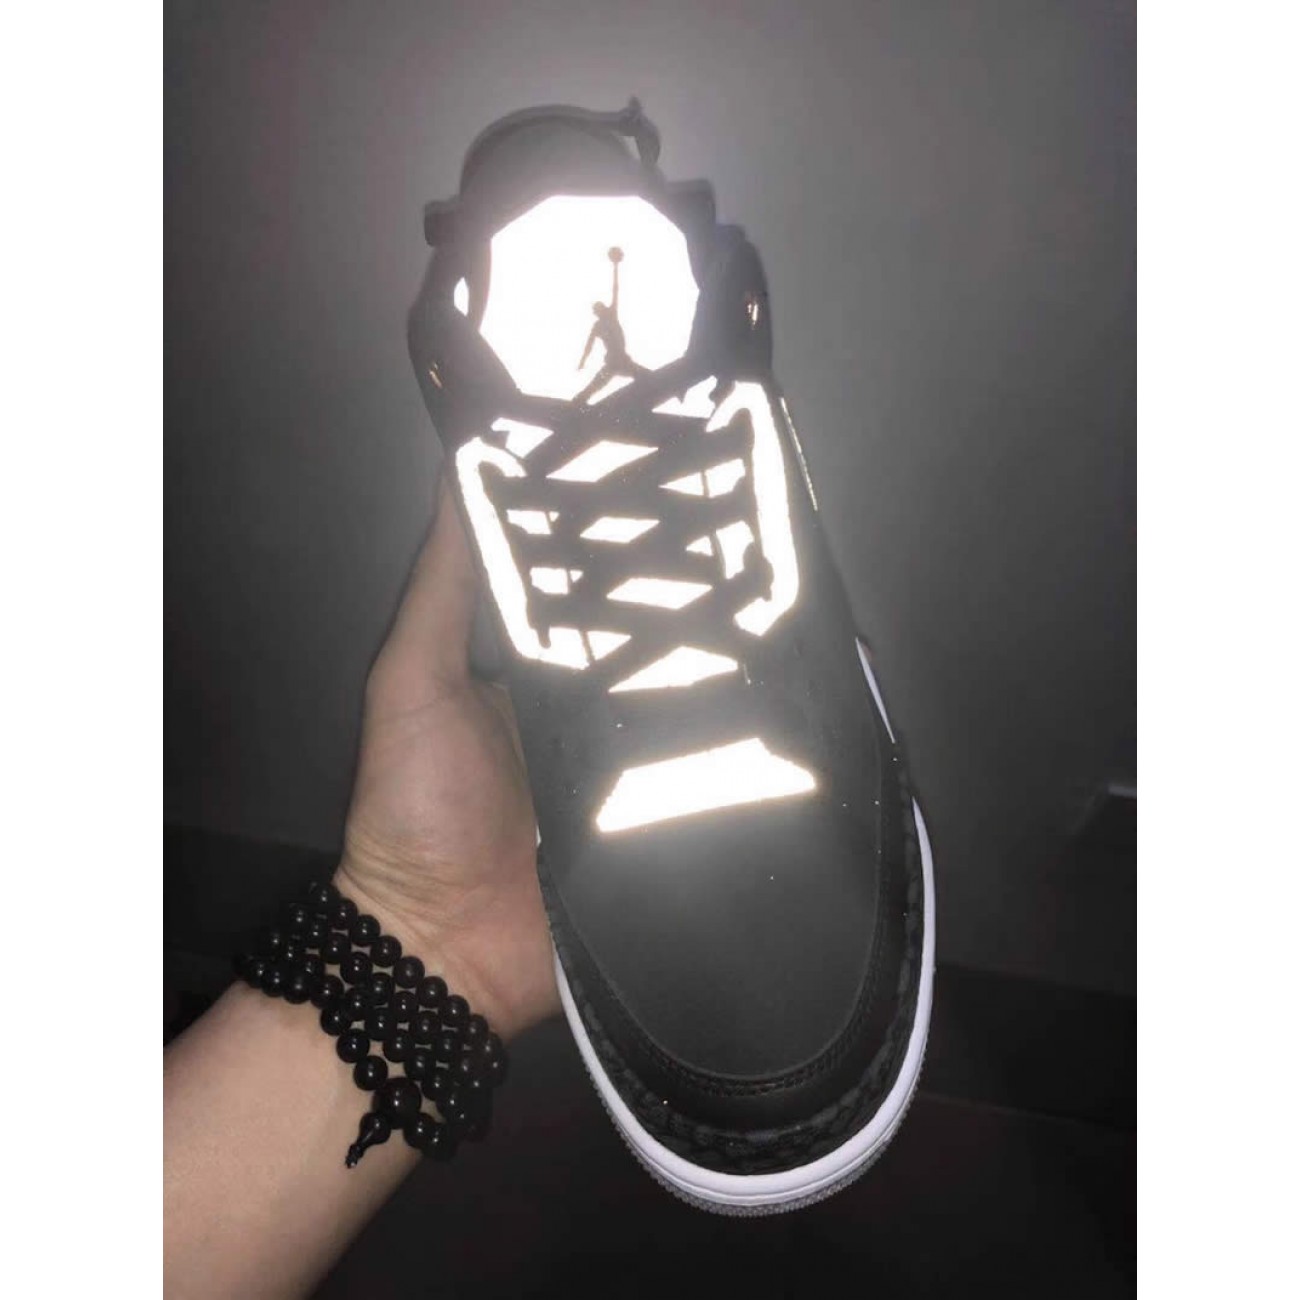 Air Jordan 3 Tinker 2019 "Black Cement" On Feet Release Date CK4348-007